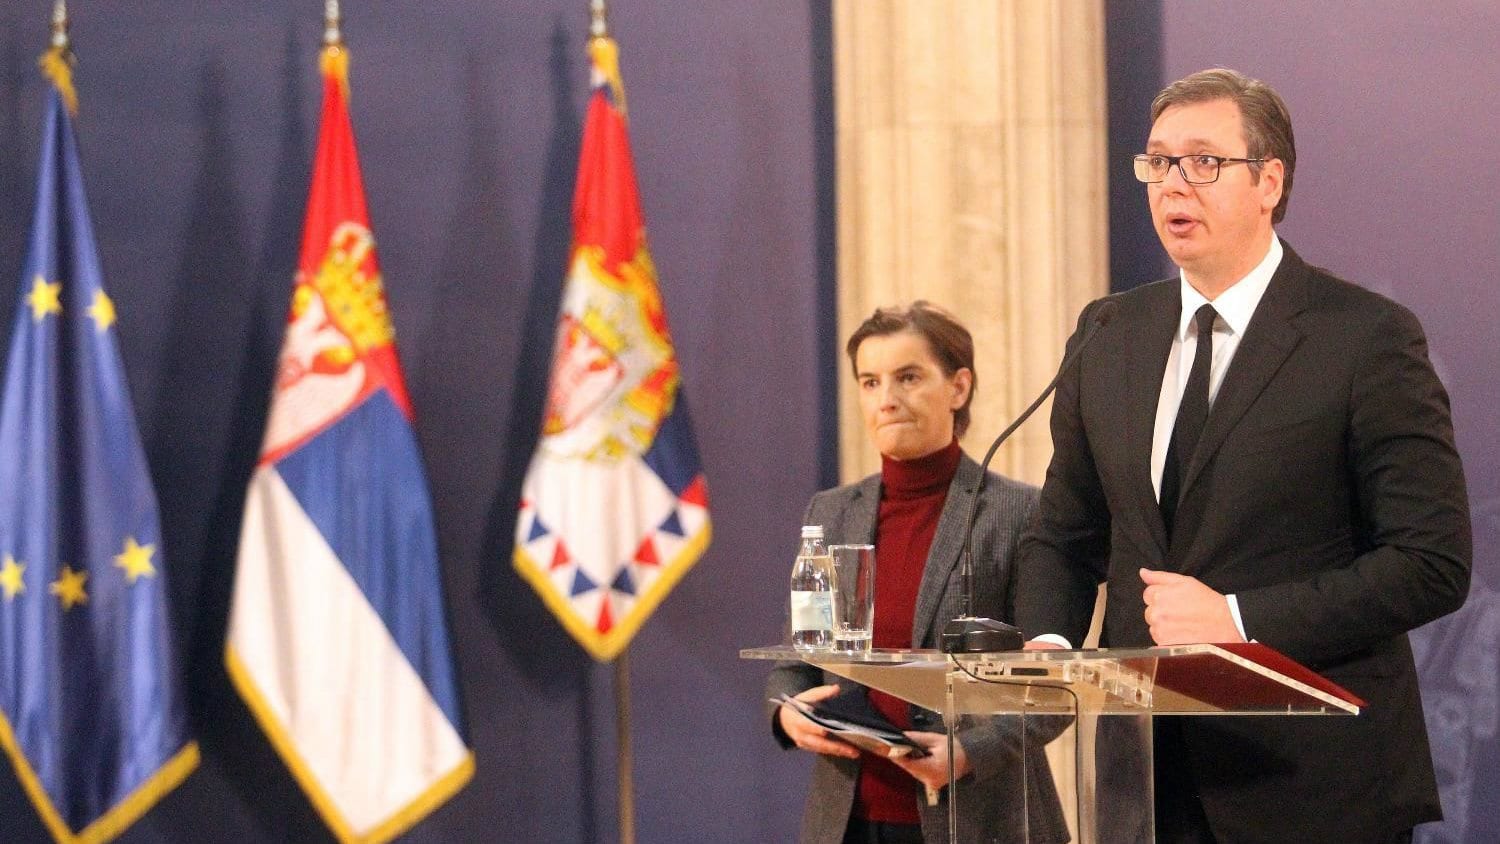 Godina u očima Istinomera: Vučić, neistine i paralelna stvarnost 1